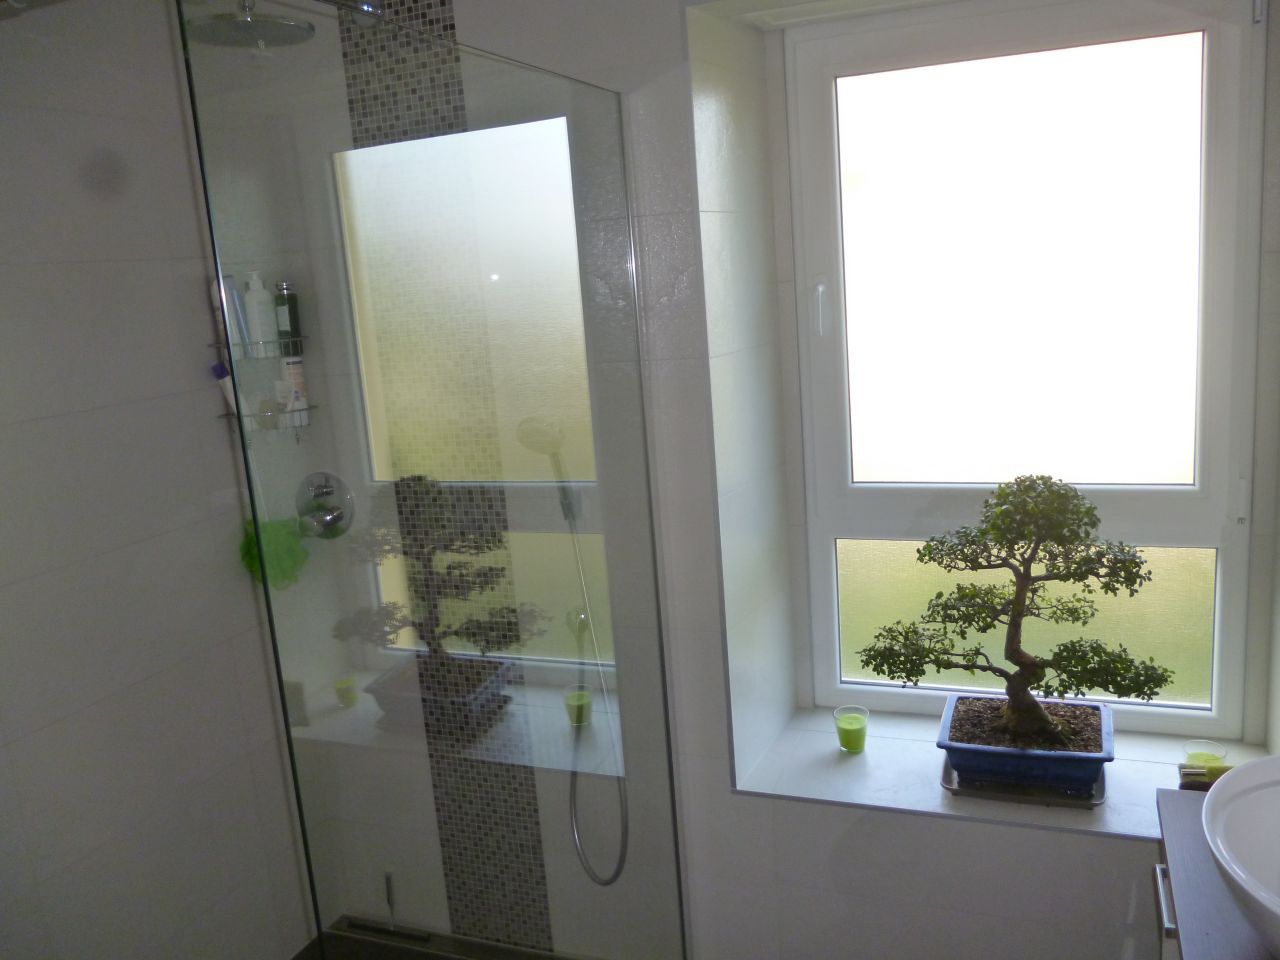 Rnovation salle de bains termine: vue de la douche et du bonsa